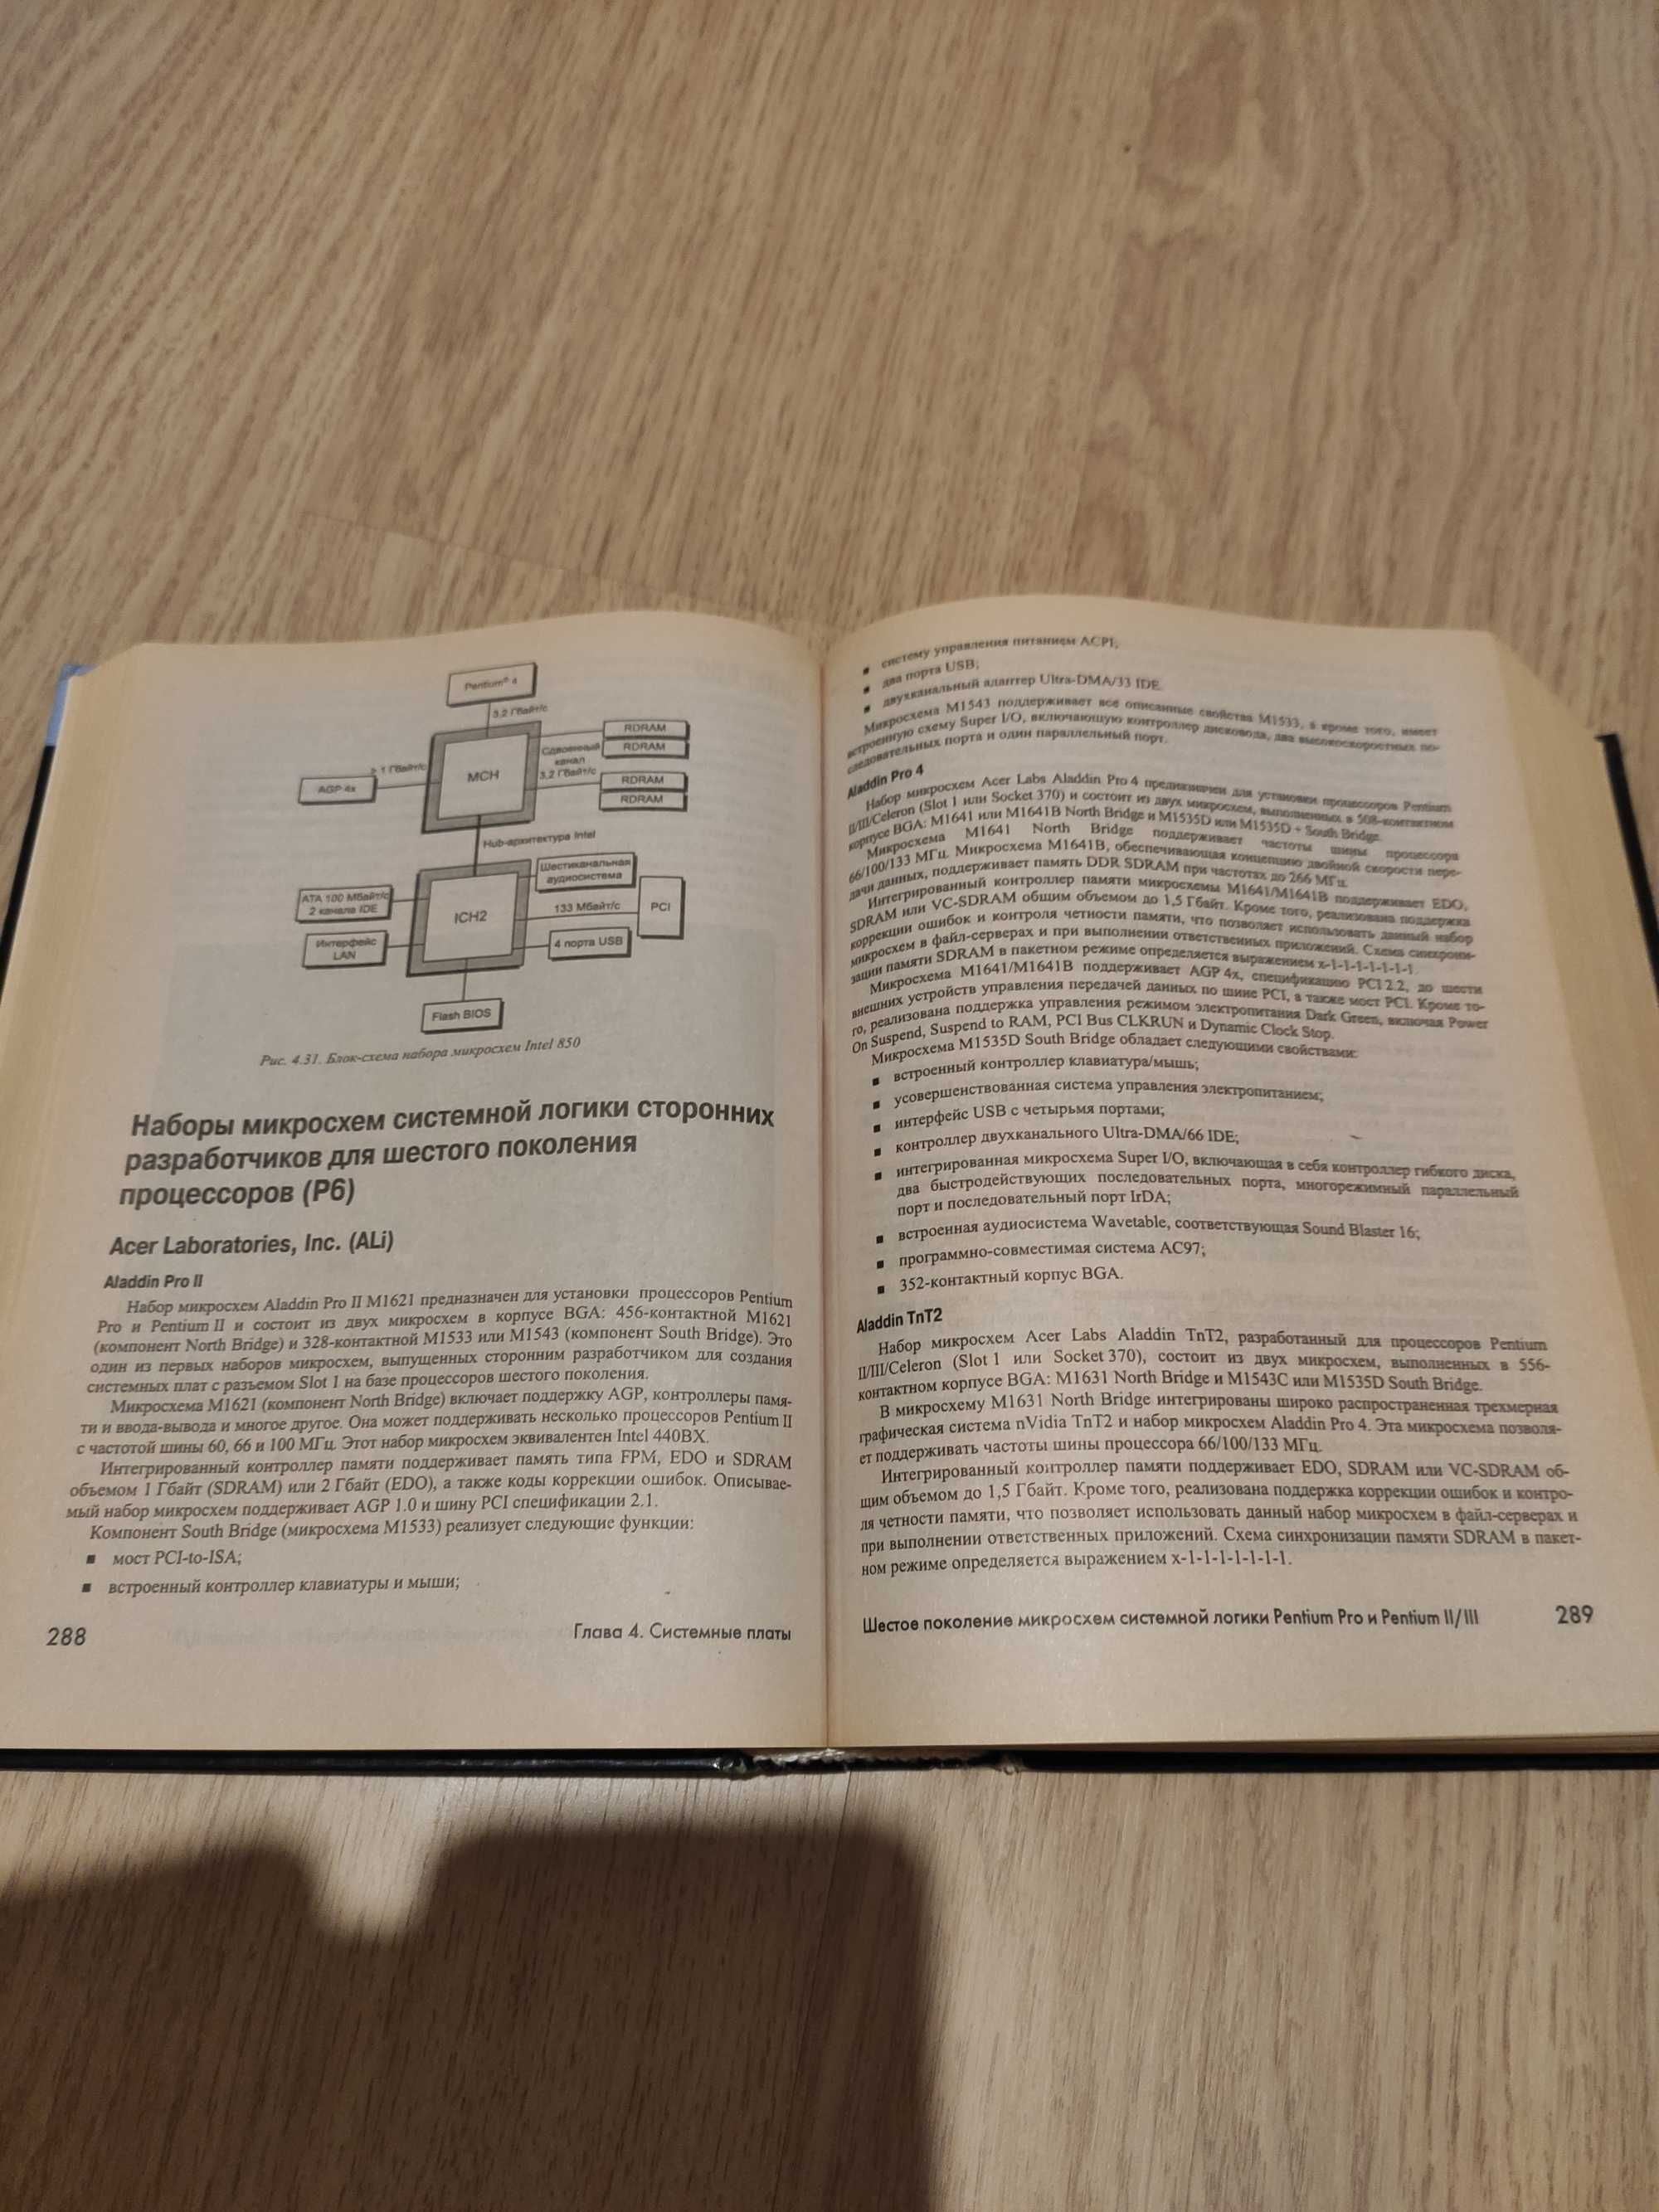 Книга Модернизация и ремонт ПК 13-е издание + CD